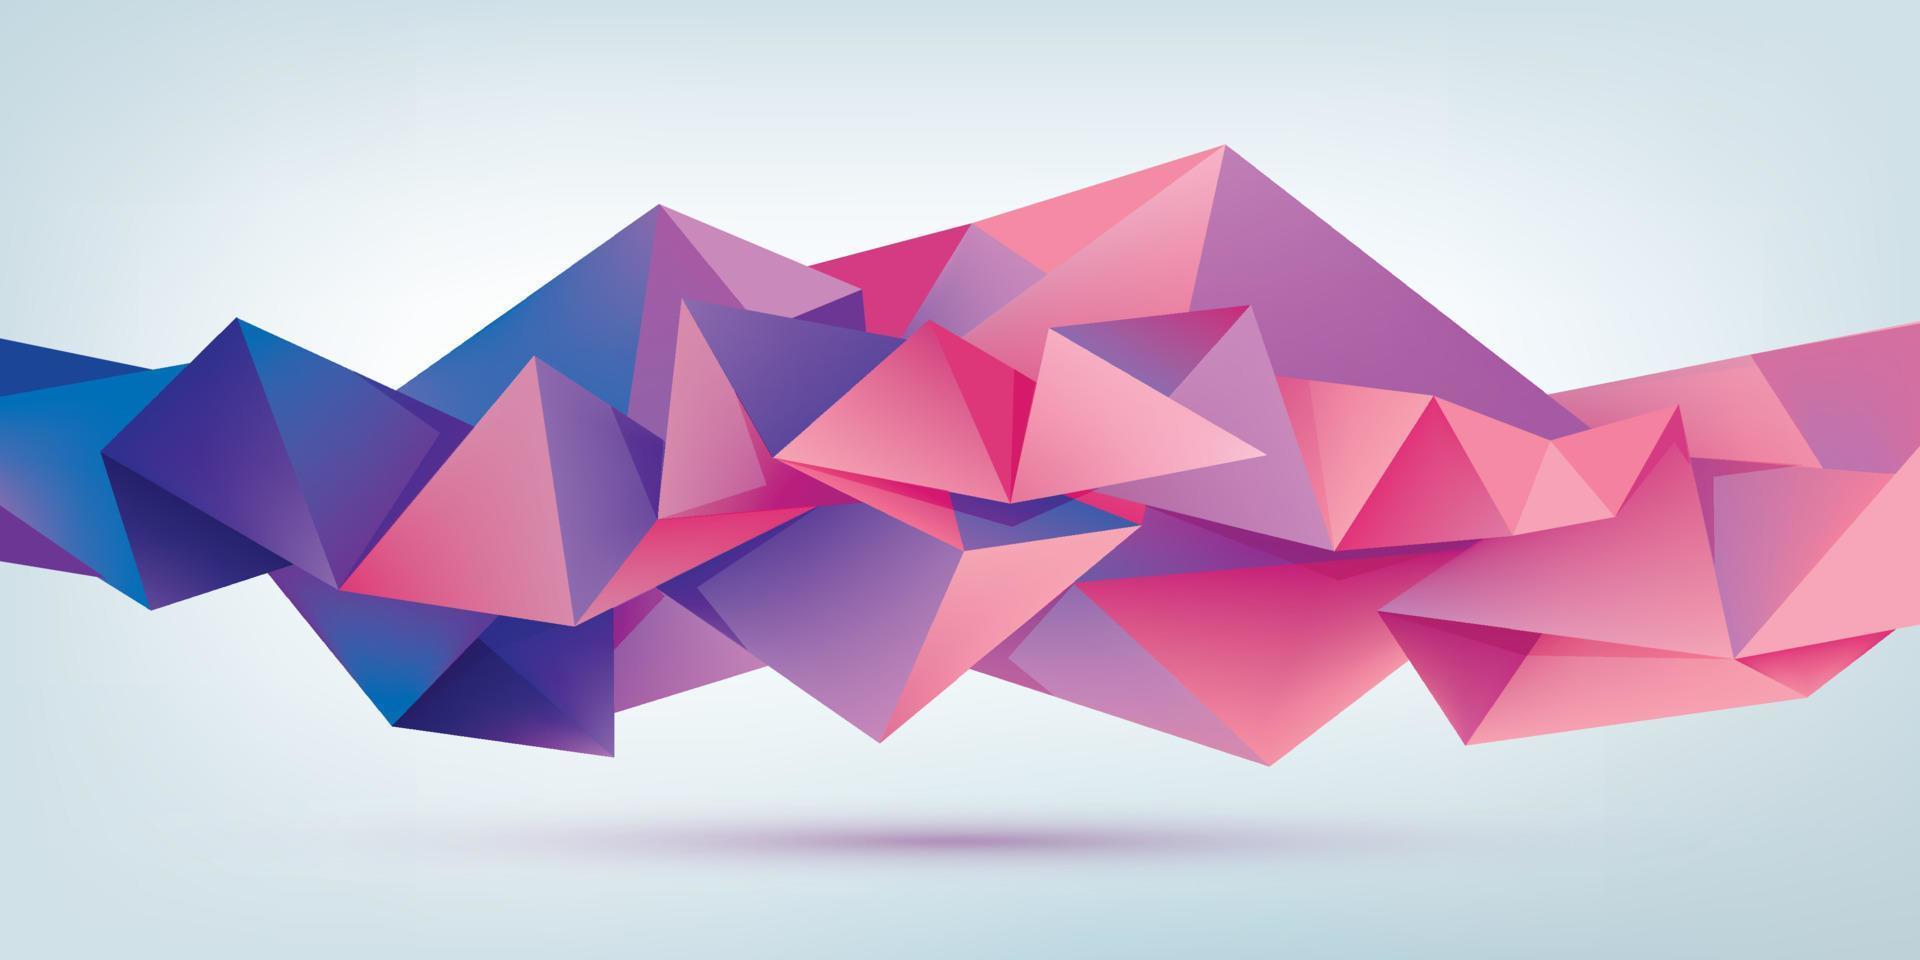 Vektor abstrakte geometrische 3D-Facettenform isoliert, Kristall, Origami-Stil. Verwendung für Banner, Web, Broschüren, Anzeigen, Poster usw. Low-Poly-moderner Hintergrund.